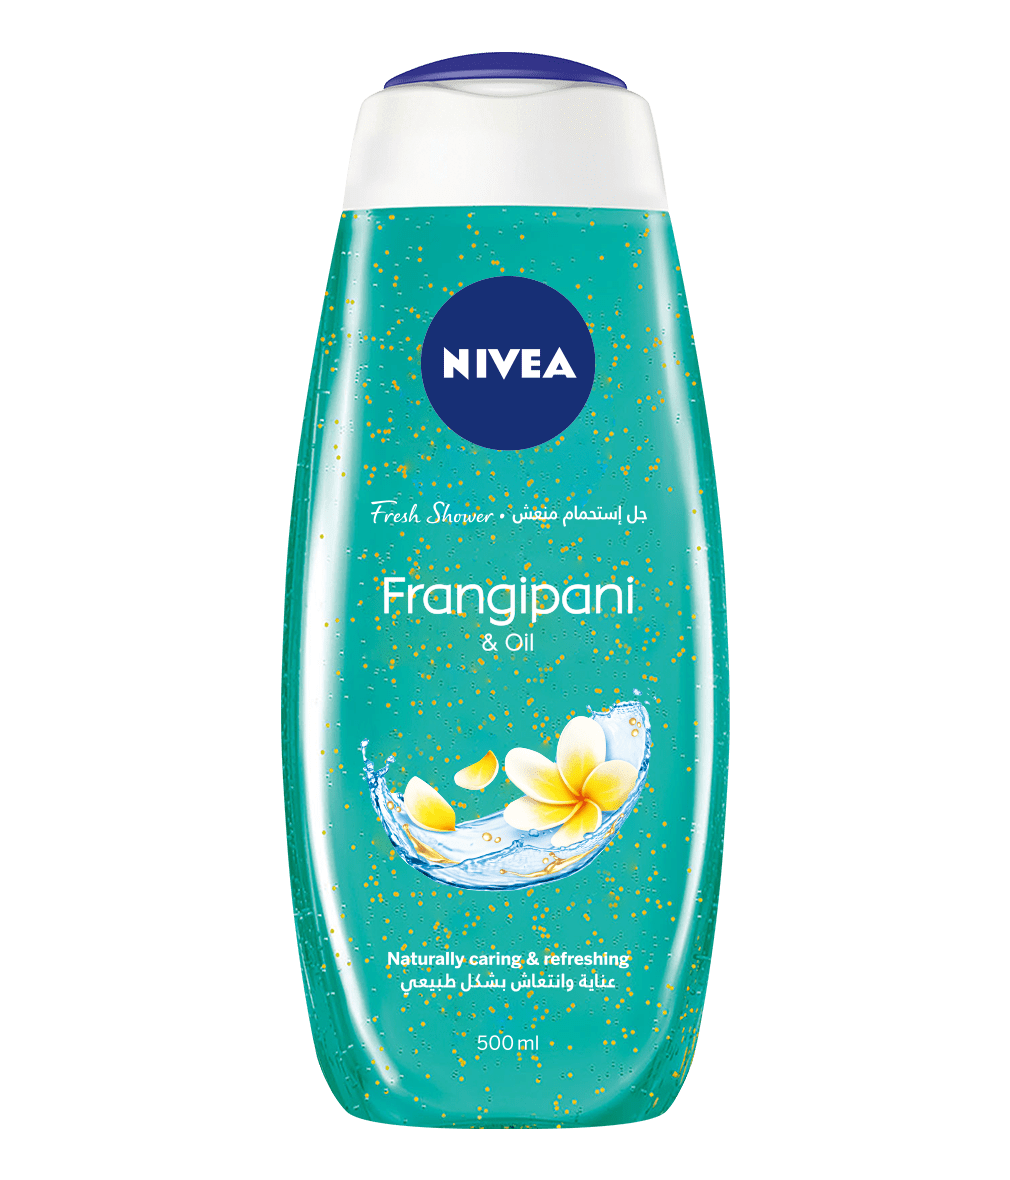 NIVEA Frangipani & Oil Gel 500ml clean packshot bi-lingual